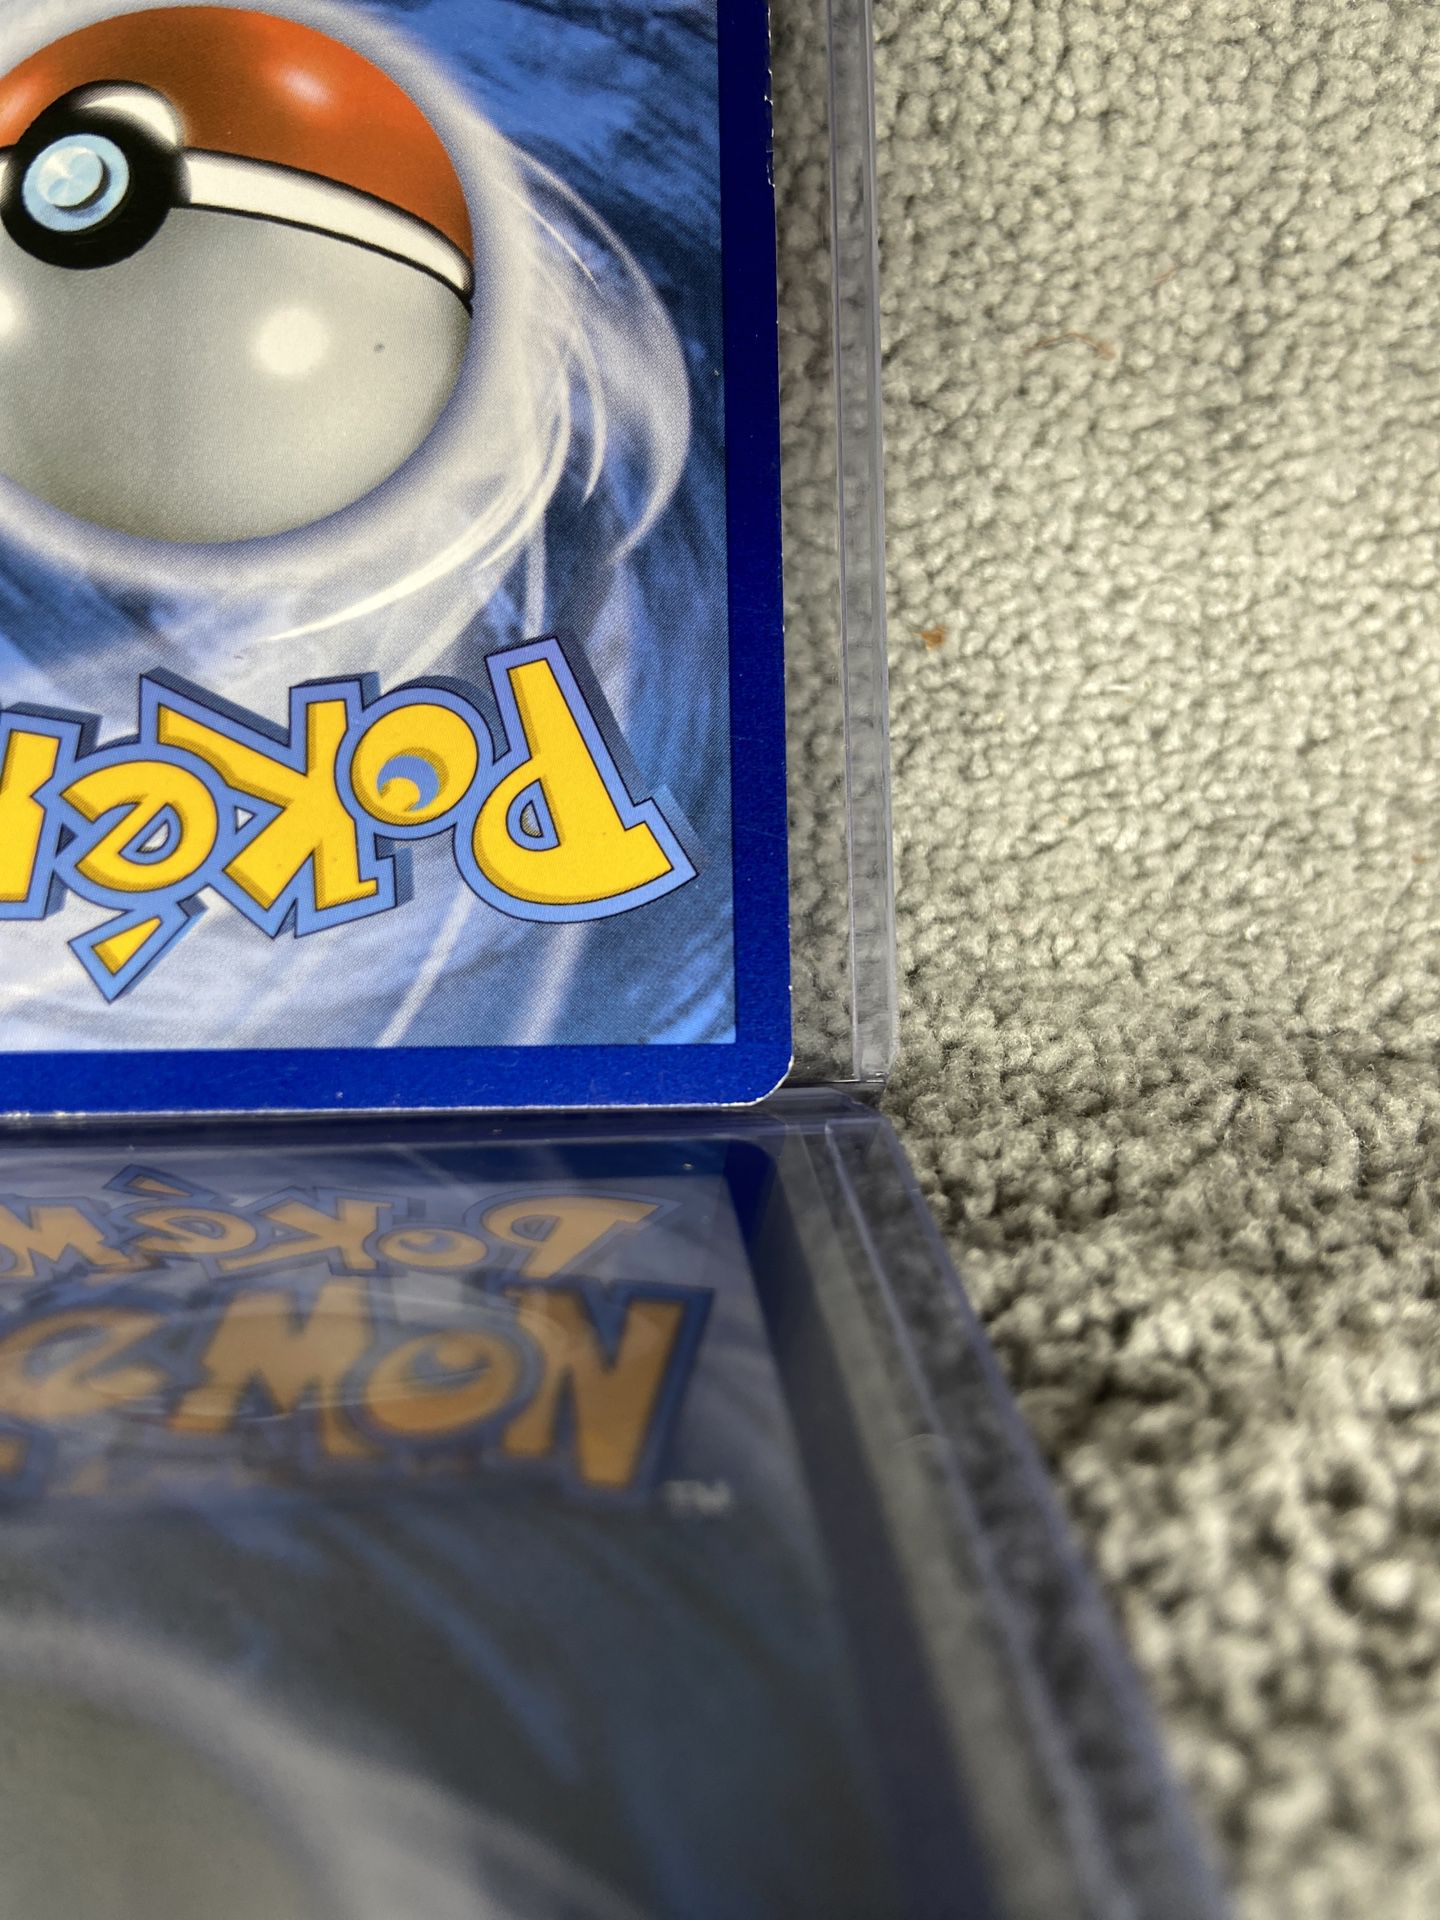 Shiny Rayquaza EX XY69 Ultra Rare Pokémon Black Star Promo